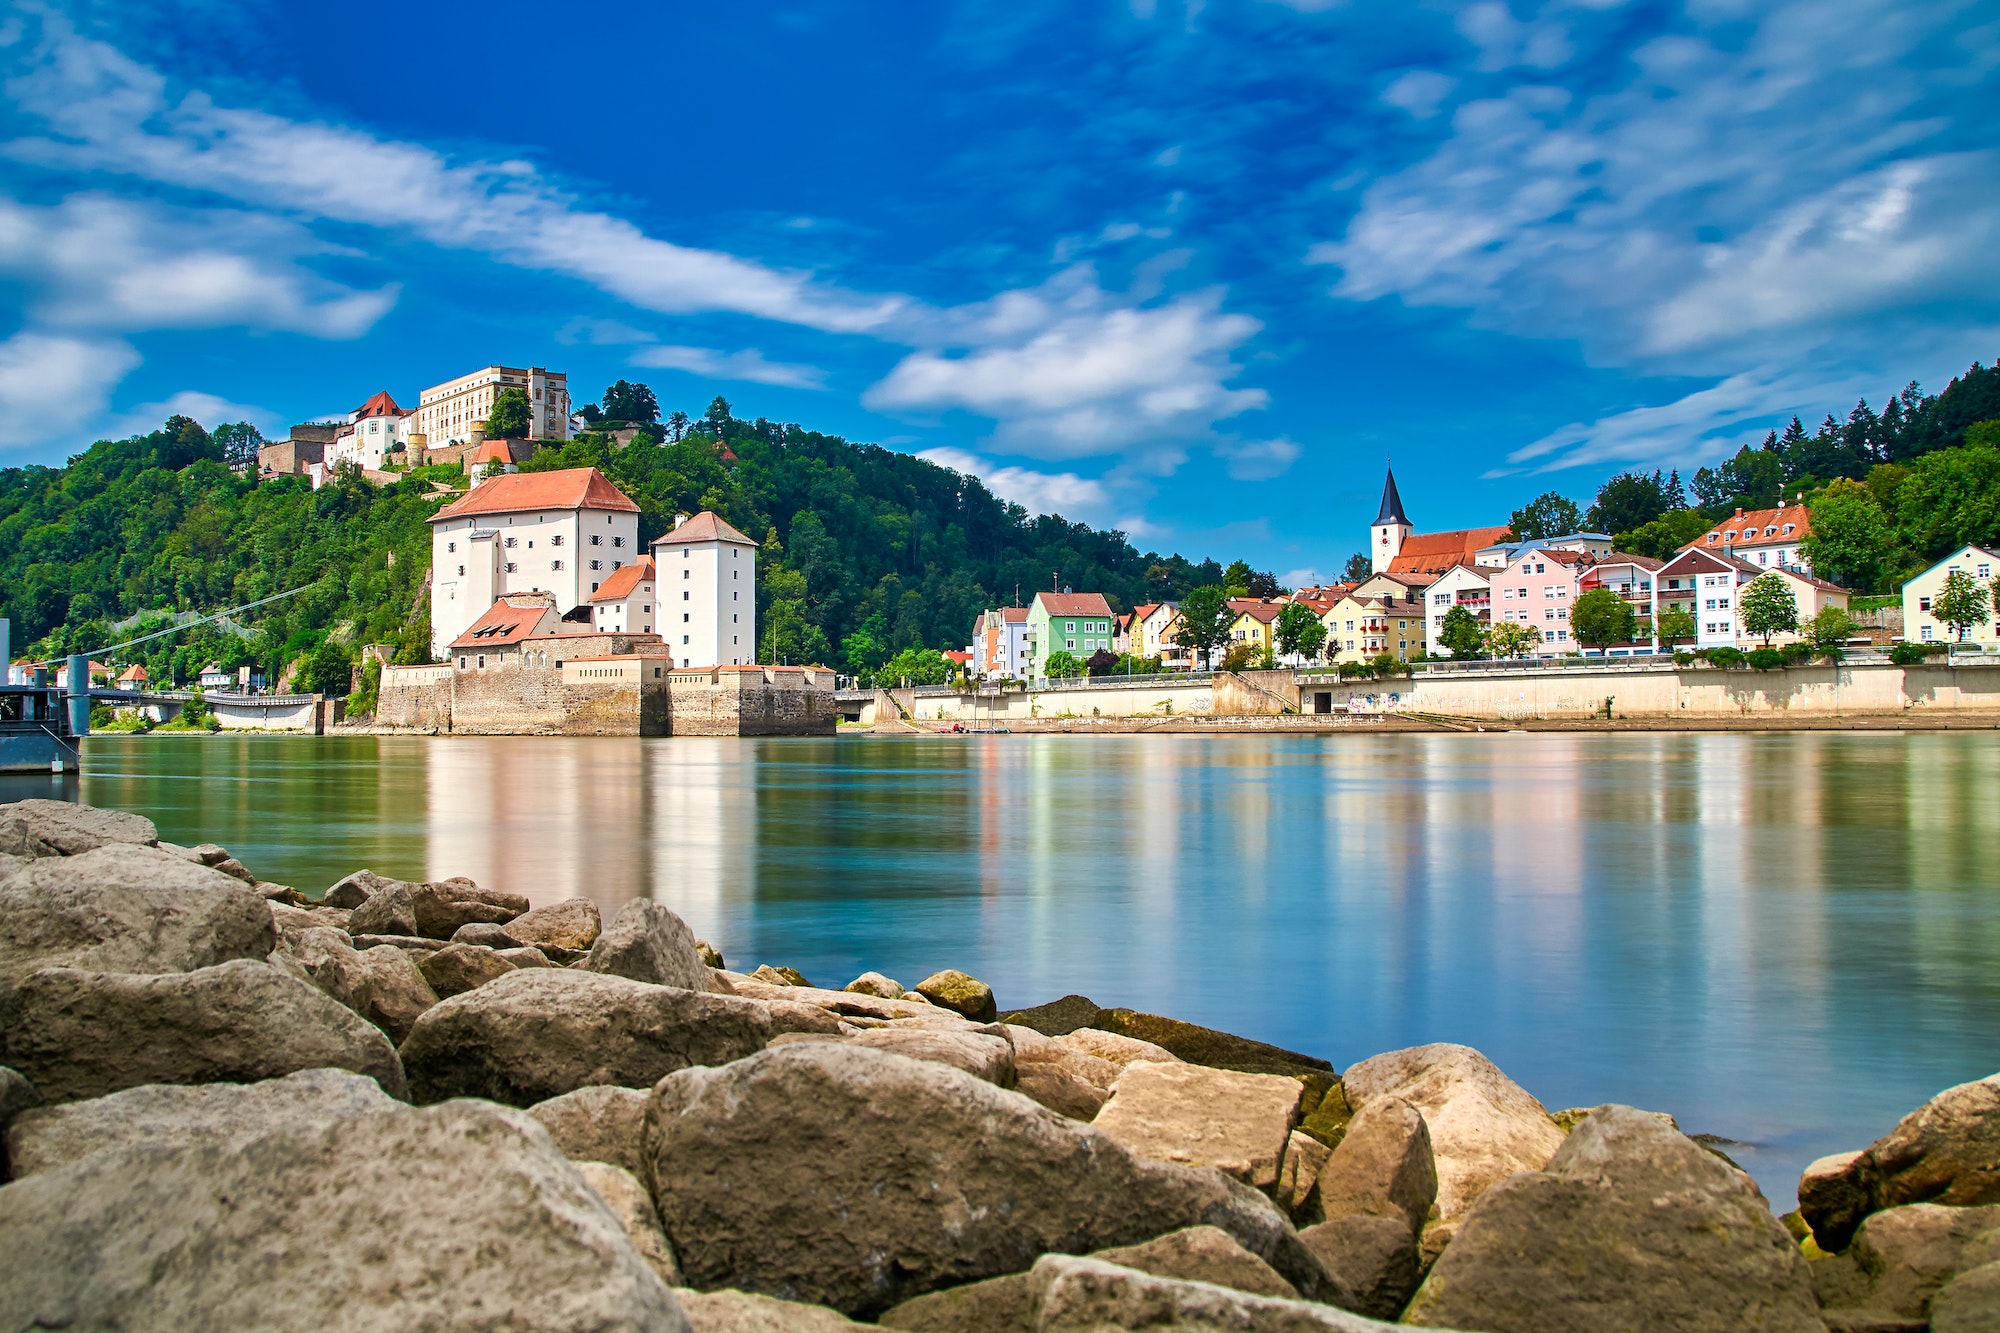 Beautiful shot of Passau Passau Germany